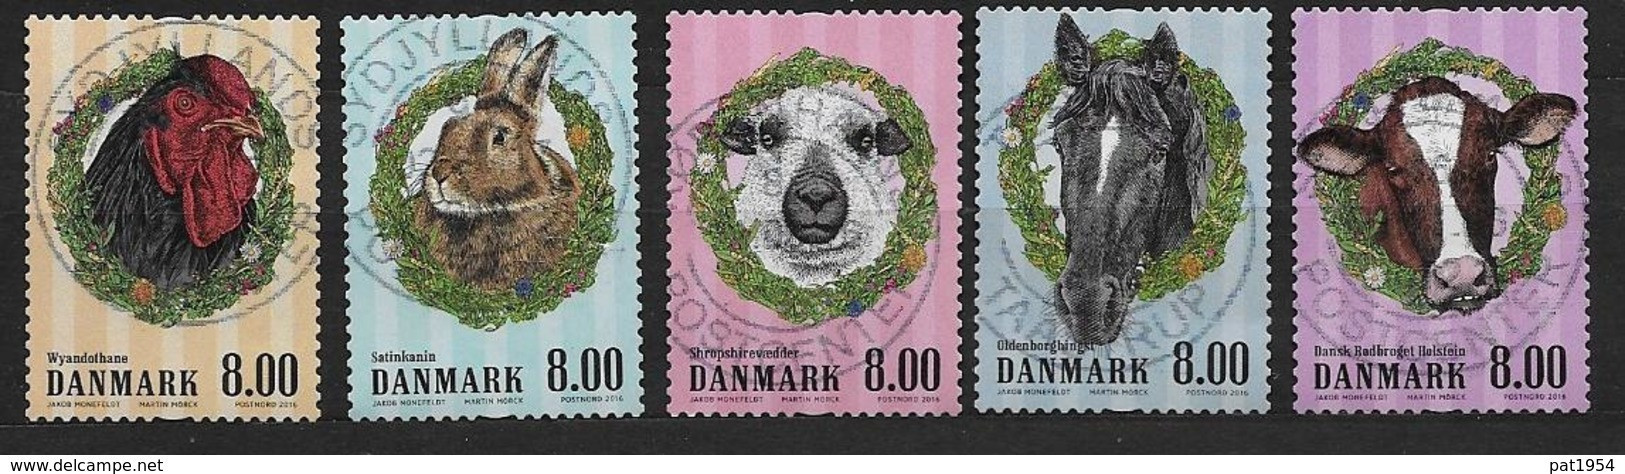 Danemark 2016 N° 1834/1838 Oblitérés Animaux De La Ferme - Oblitérés